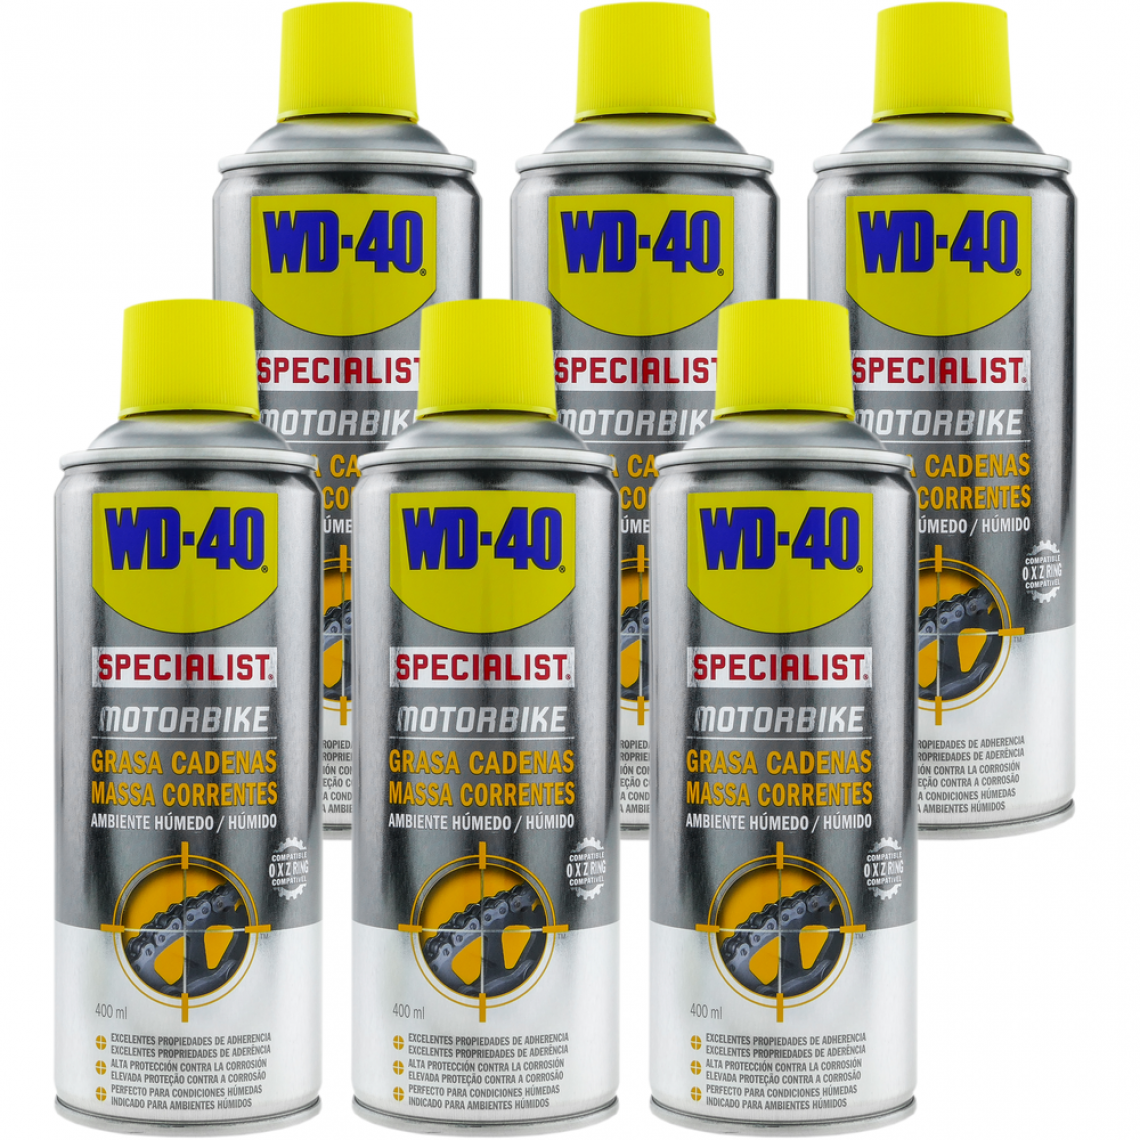 Wd-40 - Graisse pour chaîne SPECIALIST MOTORBIKE 400 ml (boîte de 6 unités) - Mastic, silicone, joint